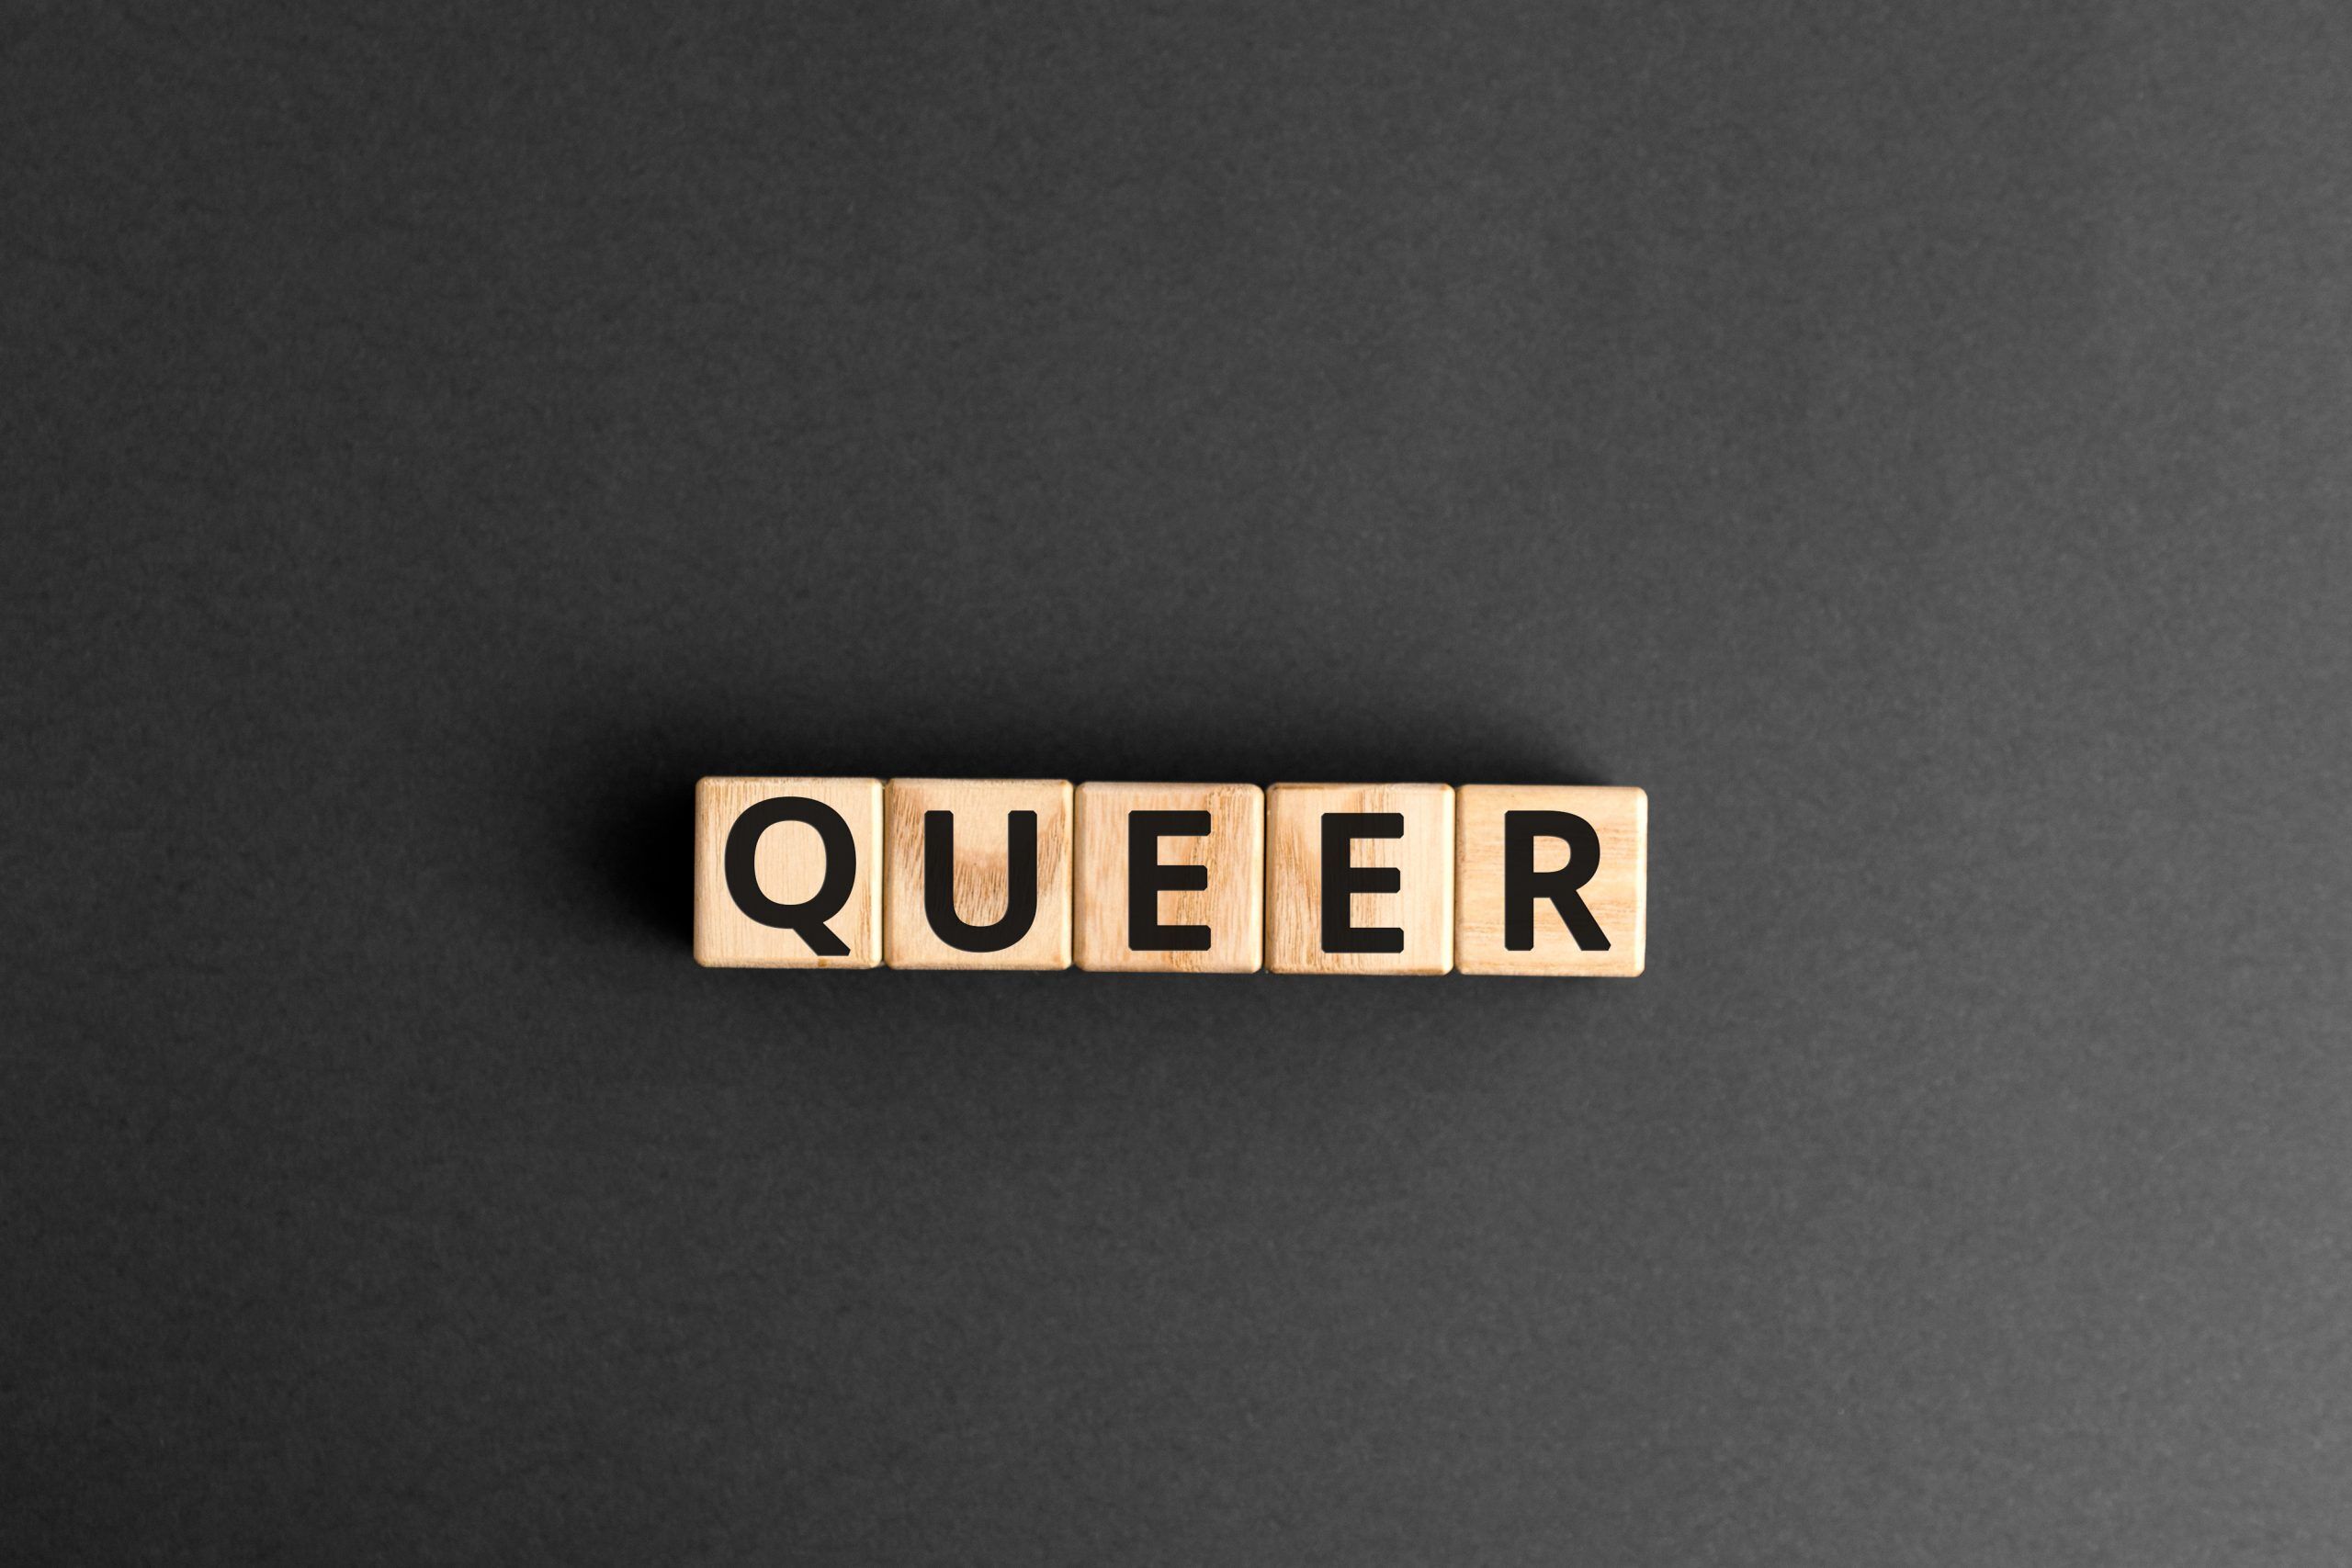 ¿Qué significa para ti la palabra "queer"?